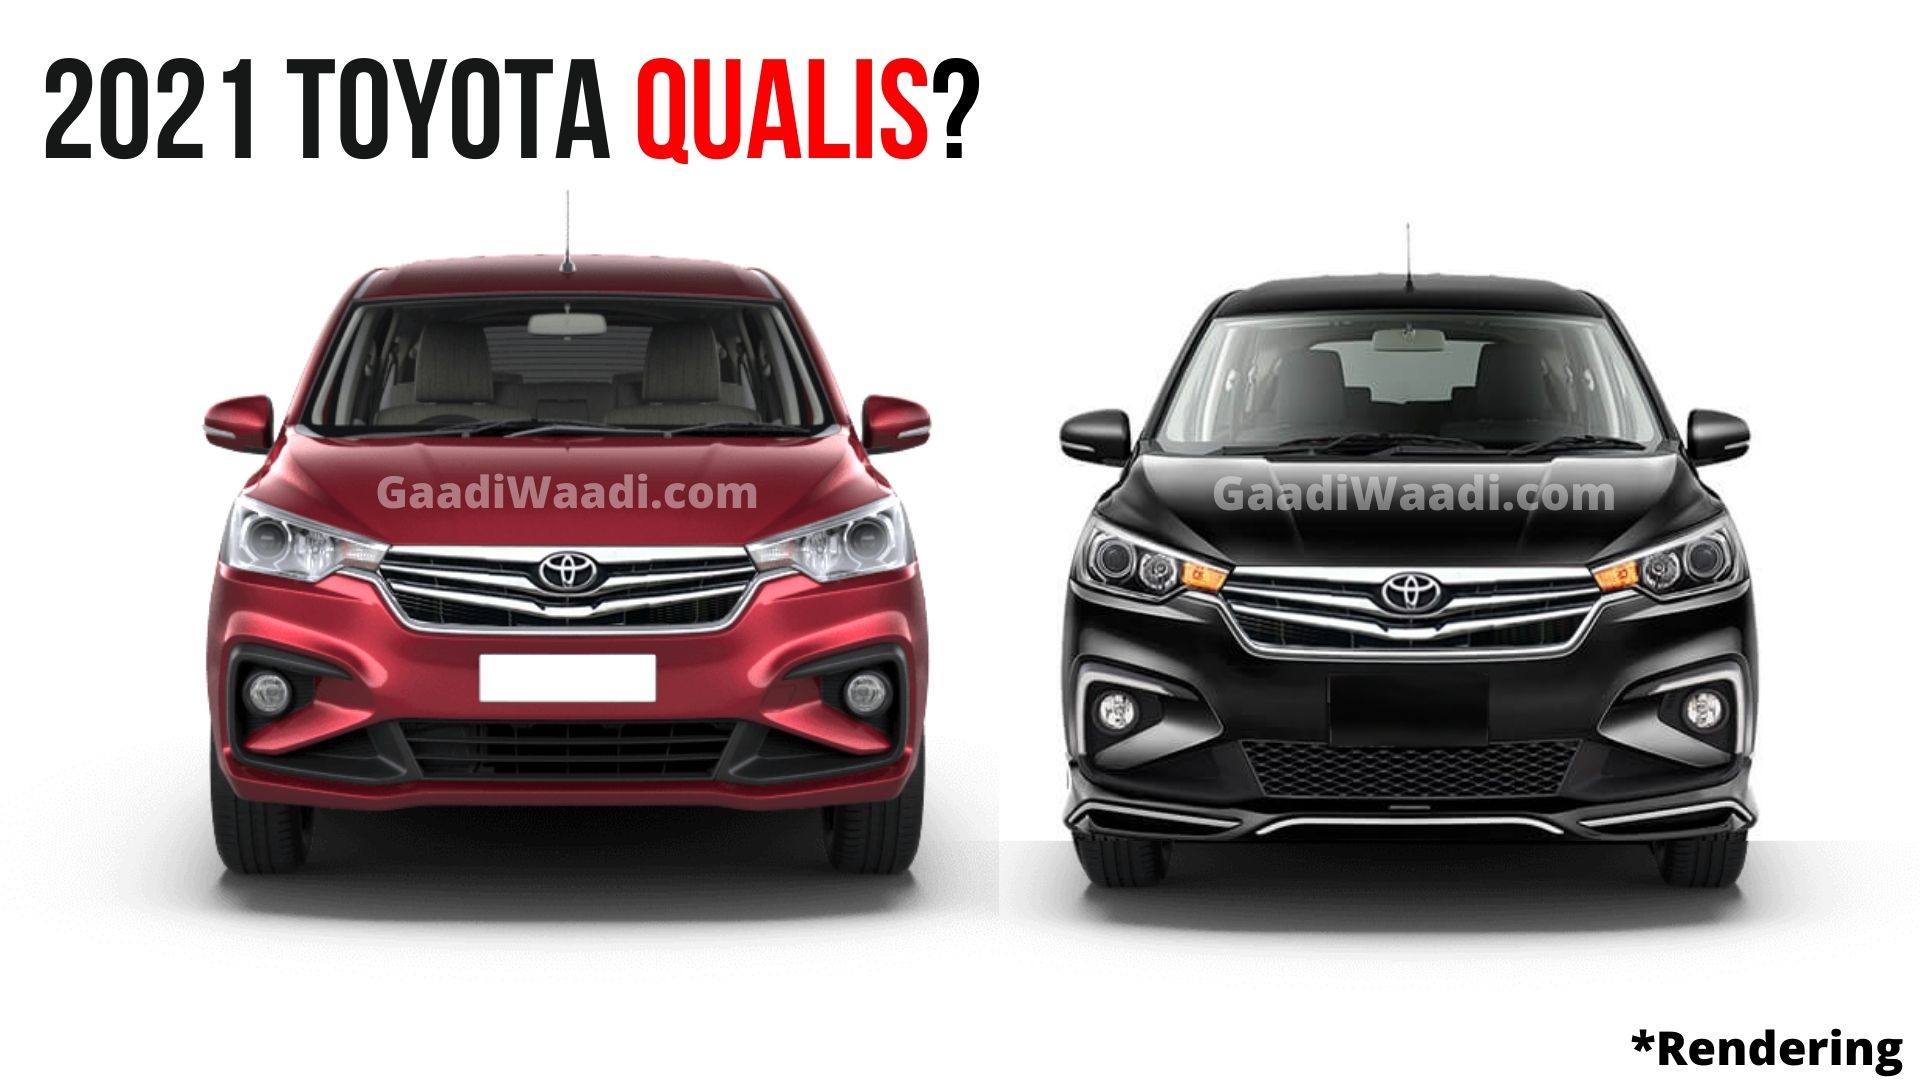 Will Toyota Put Qualis Badge On The Rebadged Ertiga?